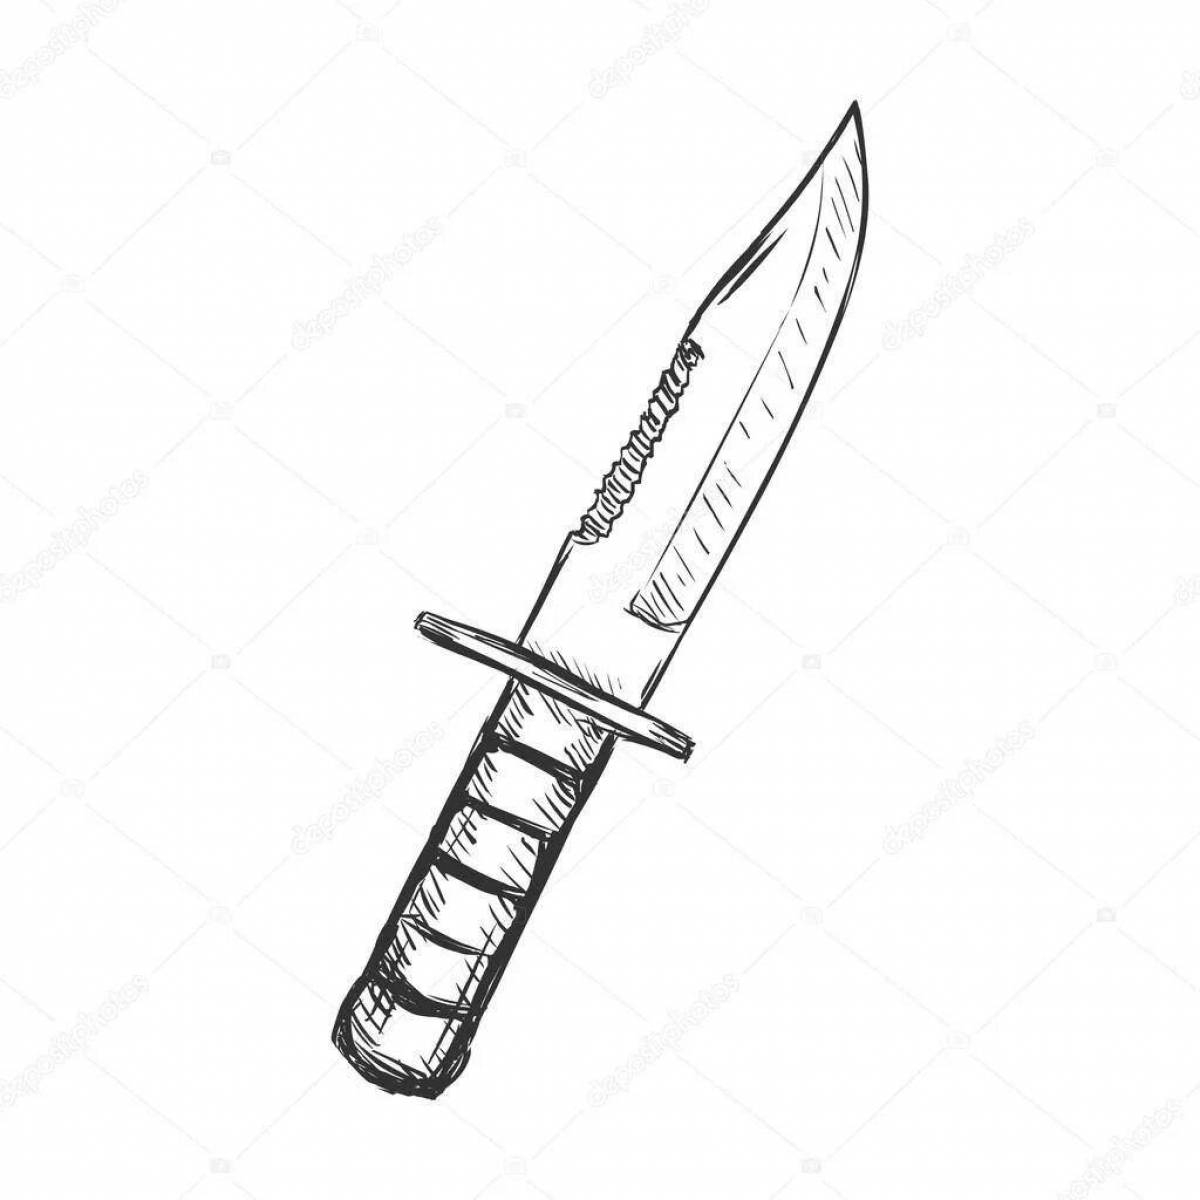 Легкие ножи standoff 2. Штык нож м9 раскраска. Штык нож м9 КС го чертеж. Нож м9 байонет из стандофф 2. М9 байонет чертеж.